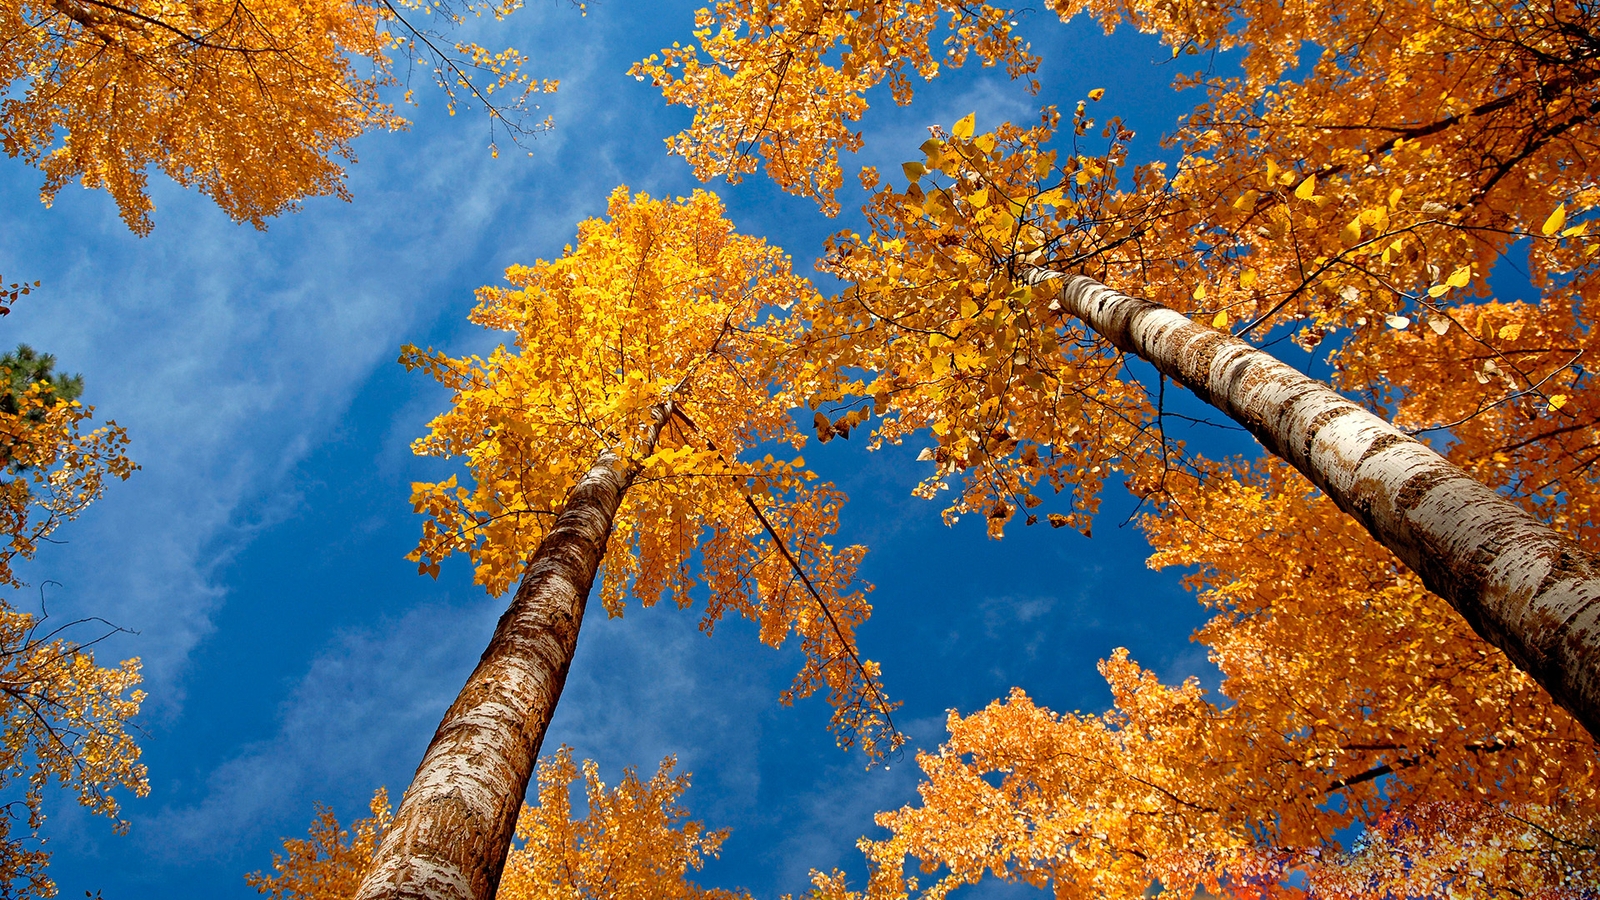 Картинка: Деревья, берёзы, листья, крона, осень, жёлтая, небо